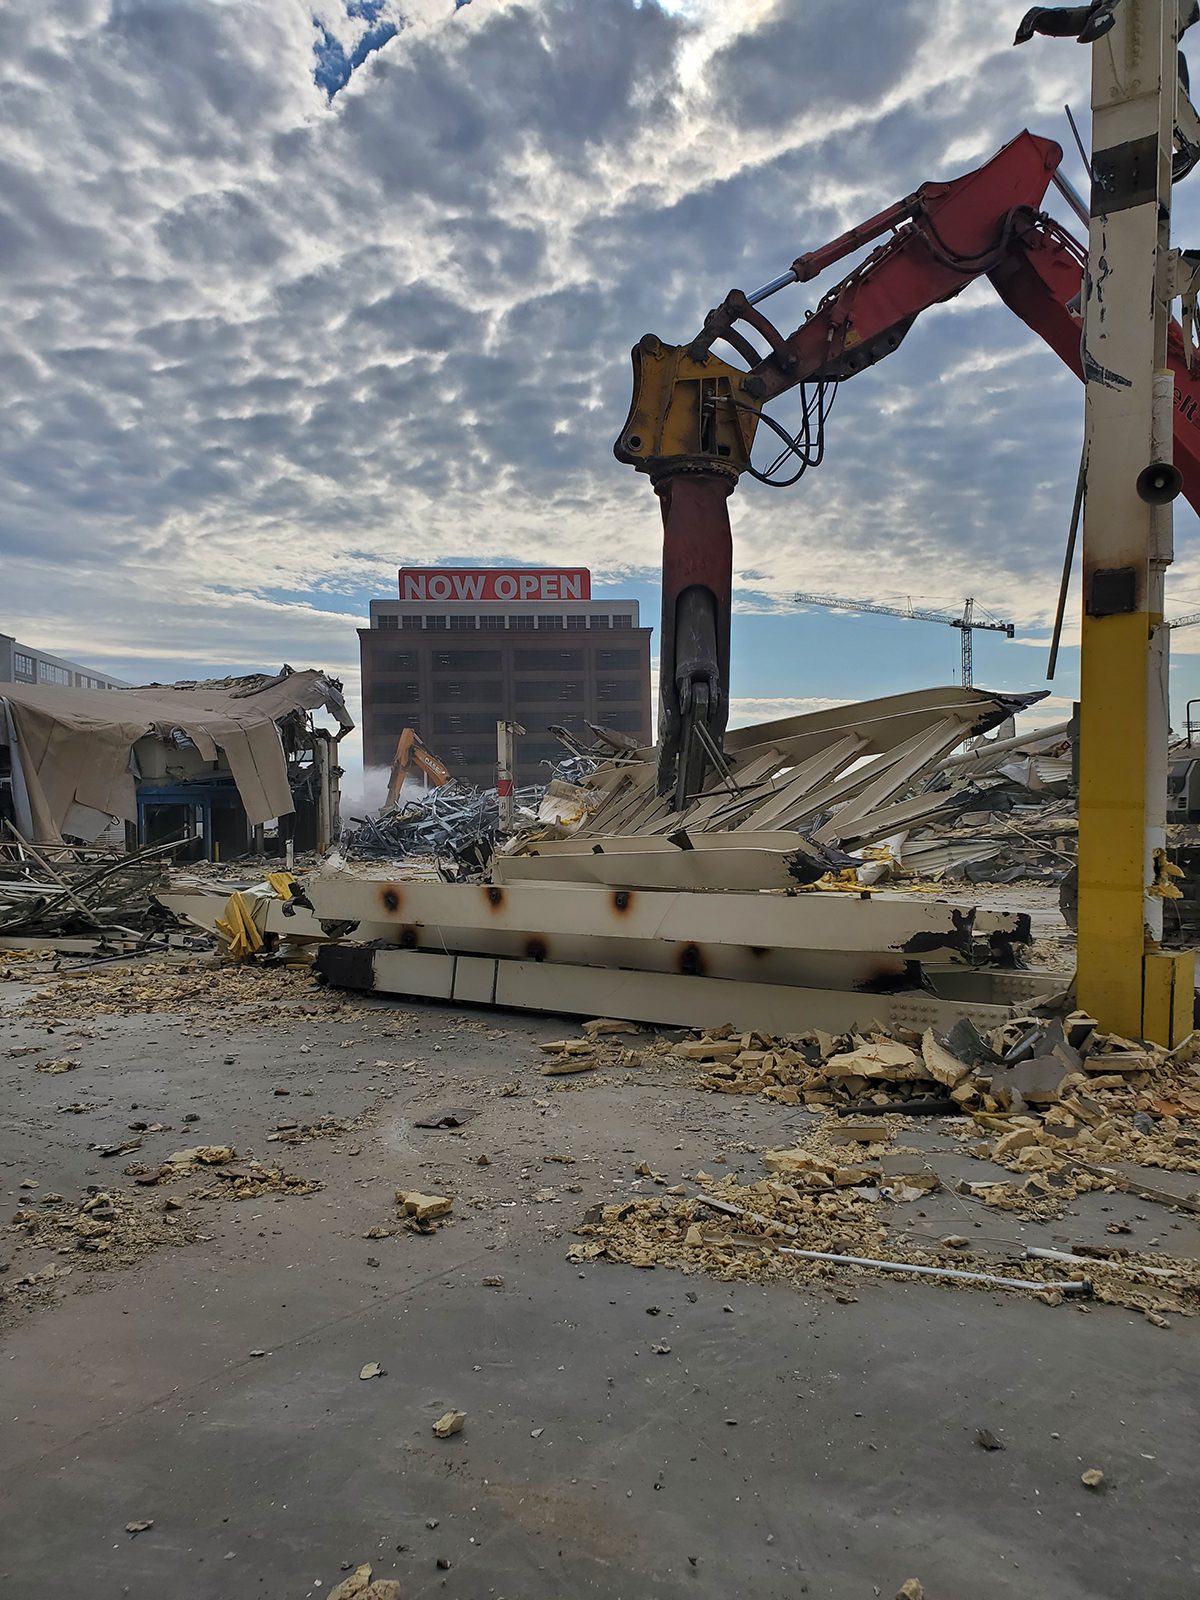 Demolition in progress with heavy equipment